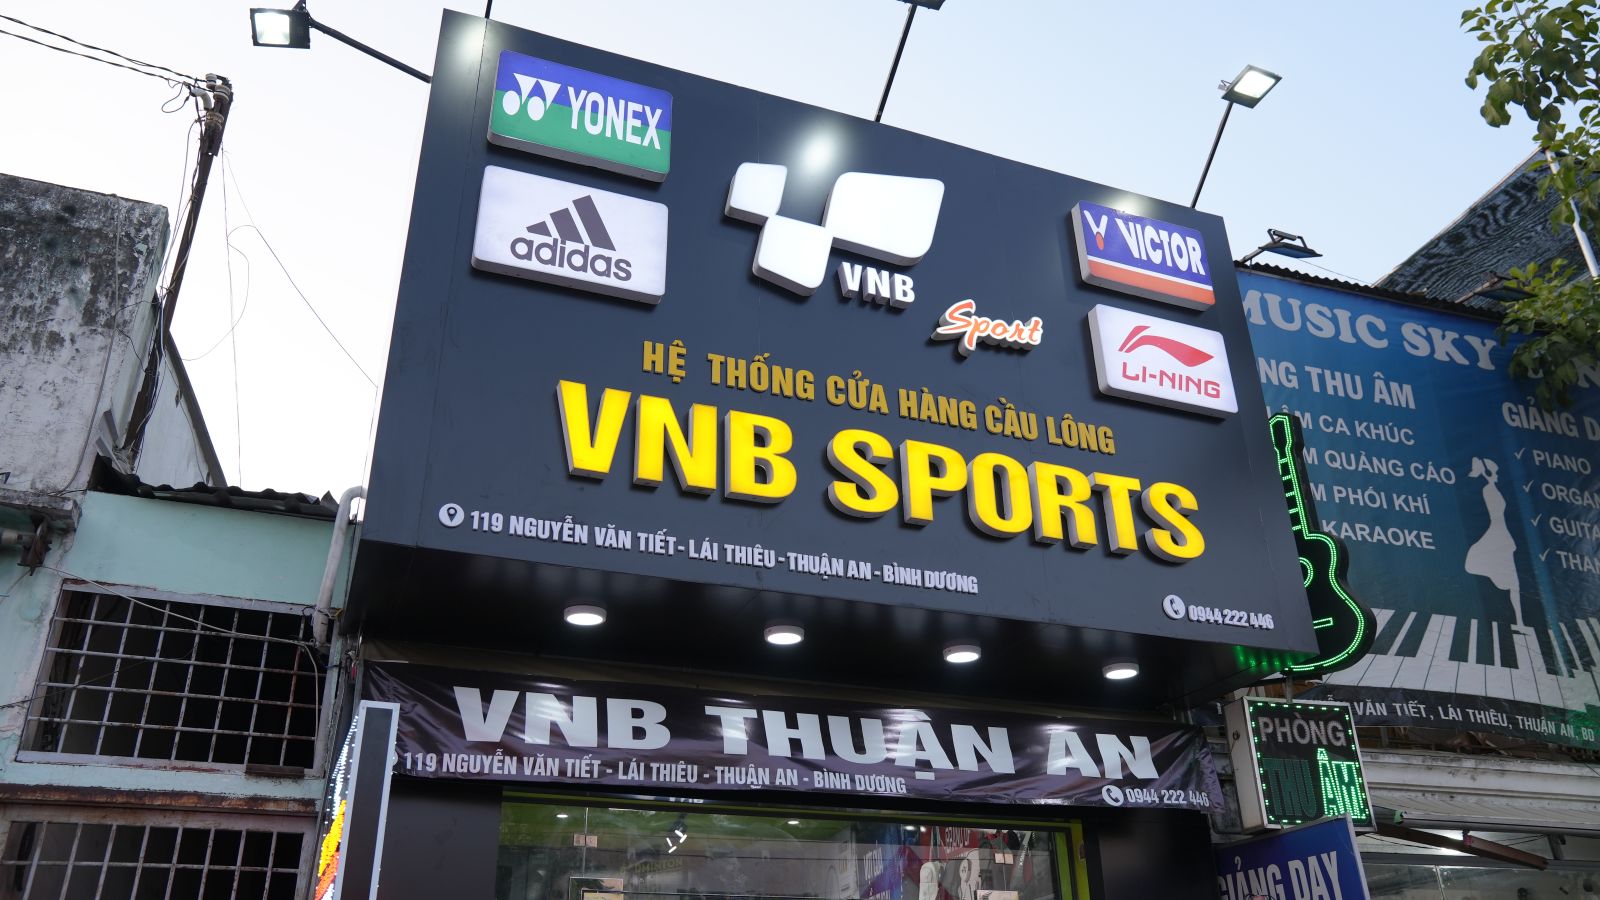 Tưng Bừng Khai Trương Shopvnb Thuận An - Shop Cầu Lông Vnb Sports Thứ 55